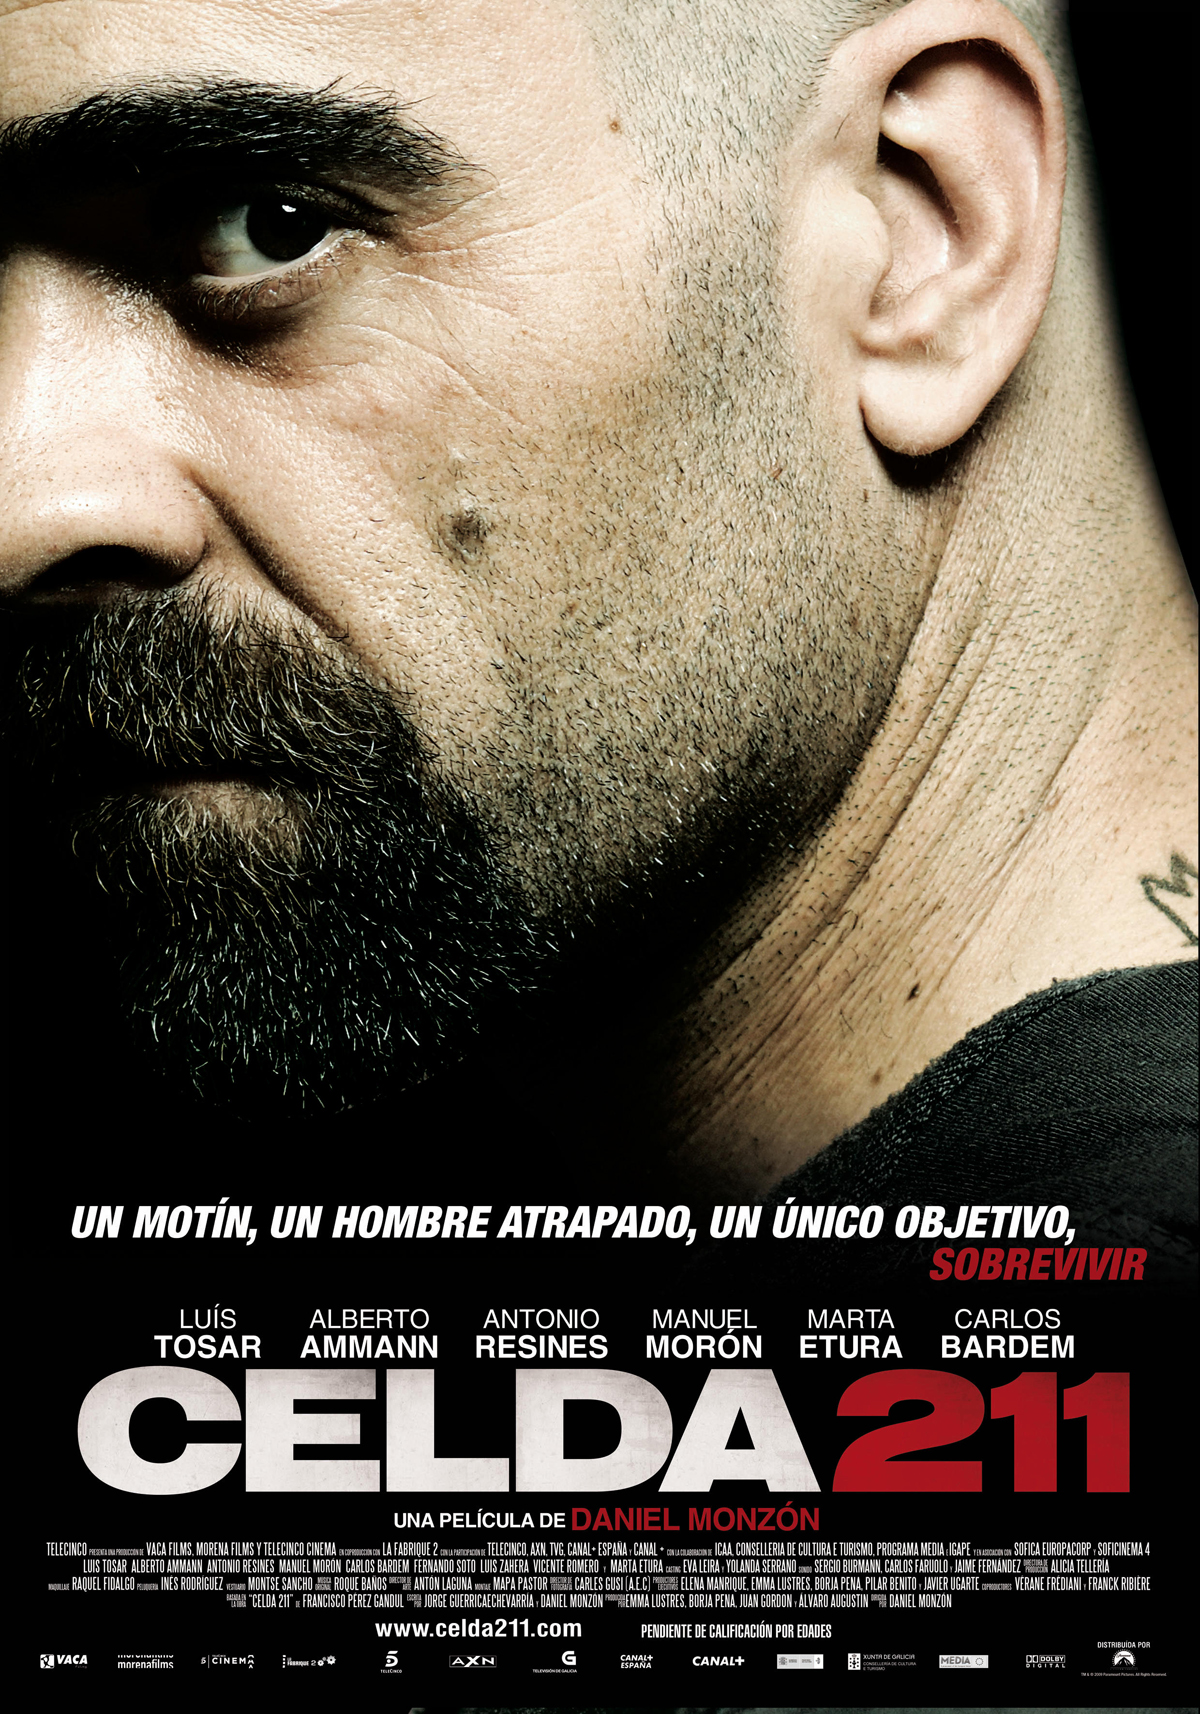 5 MARTES 28 DE OCTUBRE CELDA 211 (Daniel Monzón, 2009). Completa la ficha de la película. -MG: Revisar cláusulas con si (p.